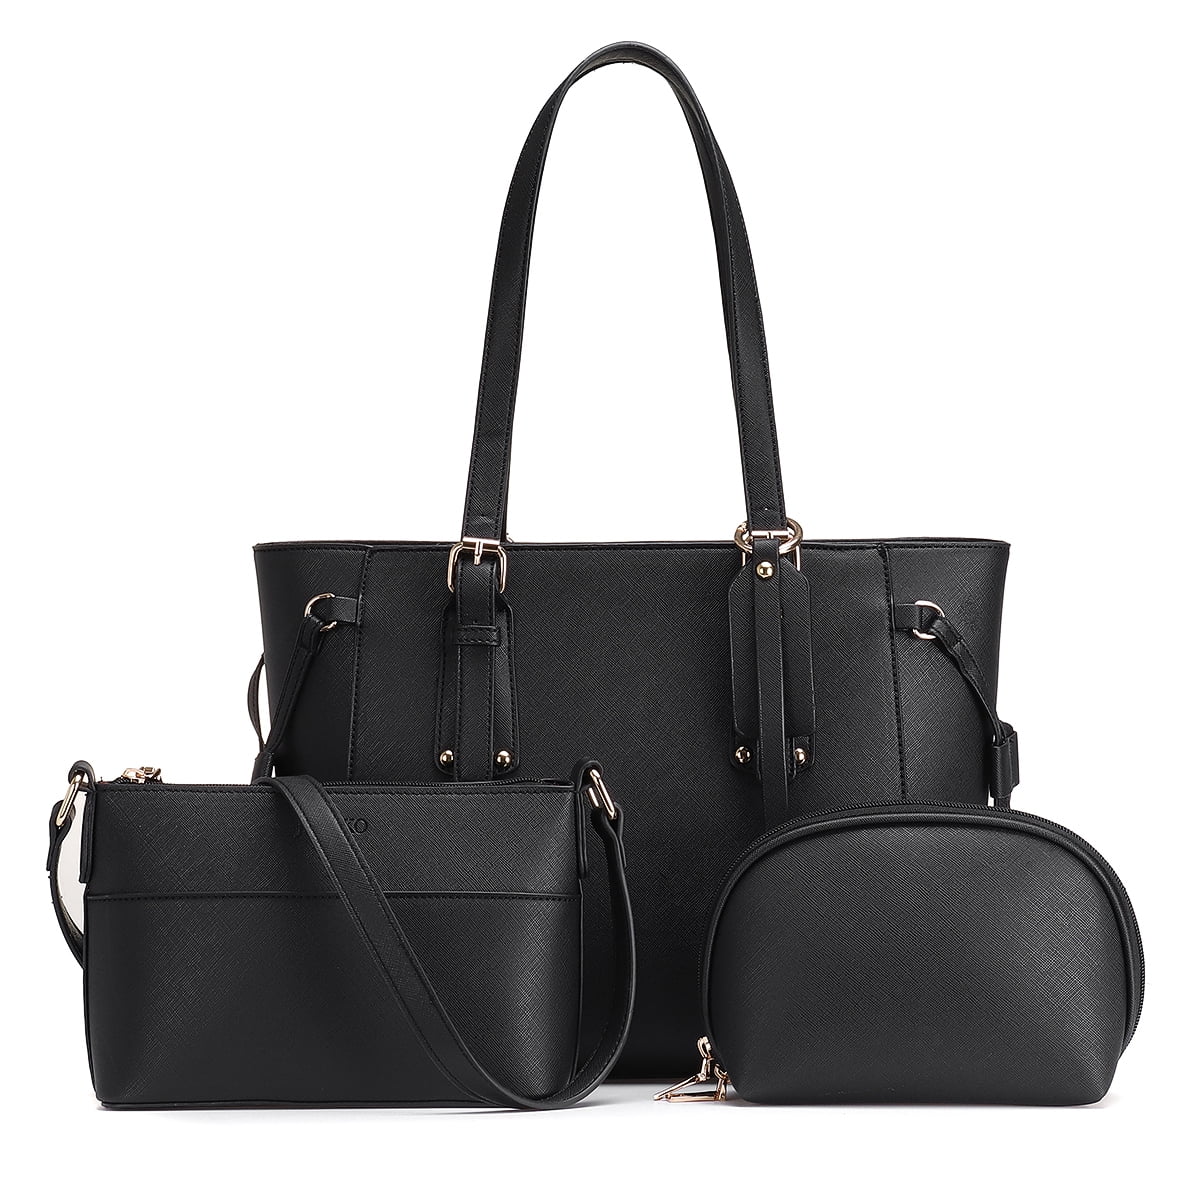 Women Large Handbag Purses Shoulder Bag 3pcs Tote Set Crossbody Clutch Purses